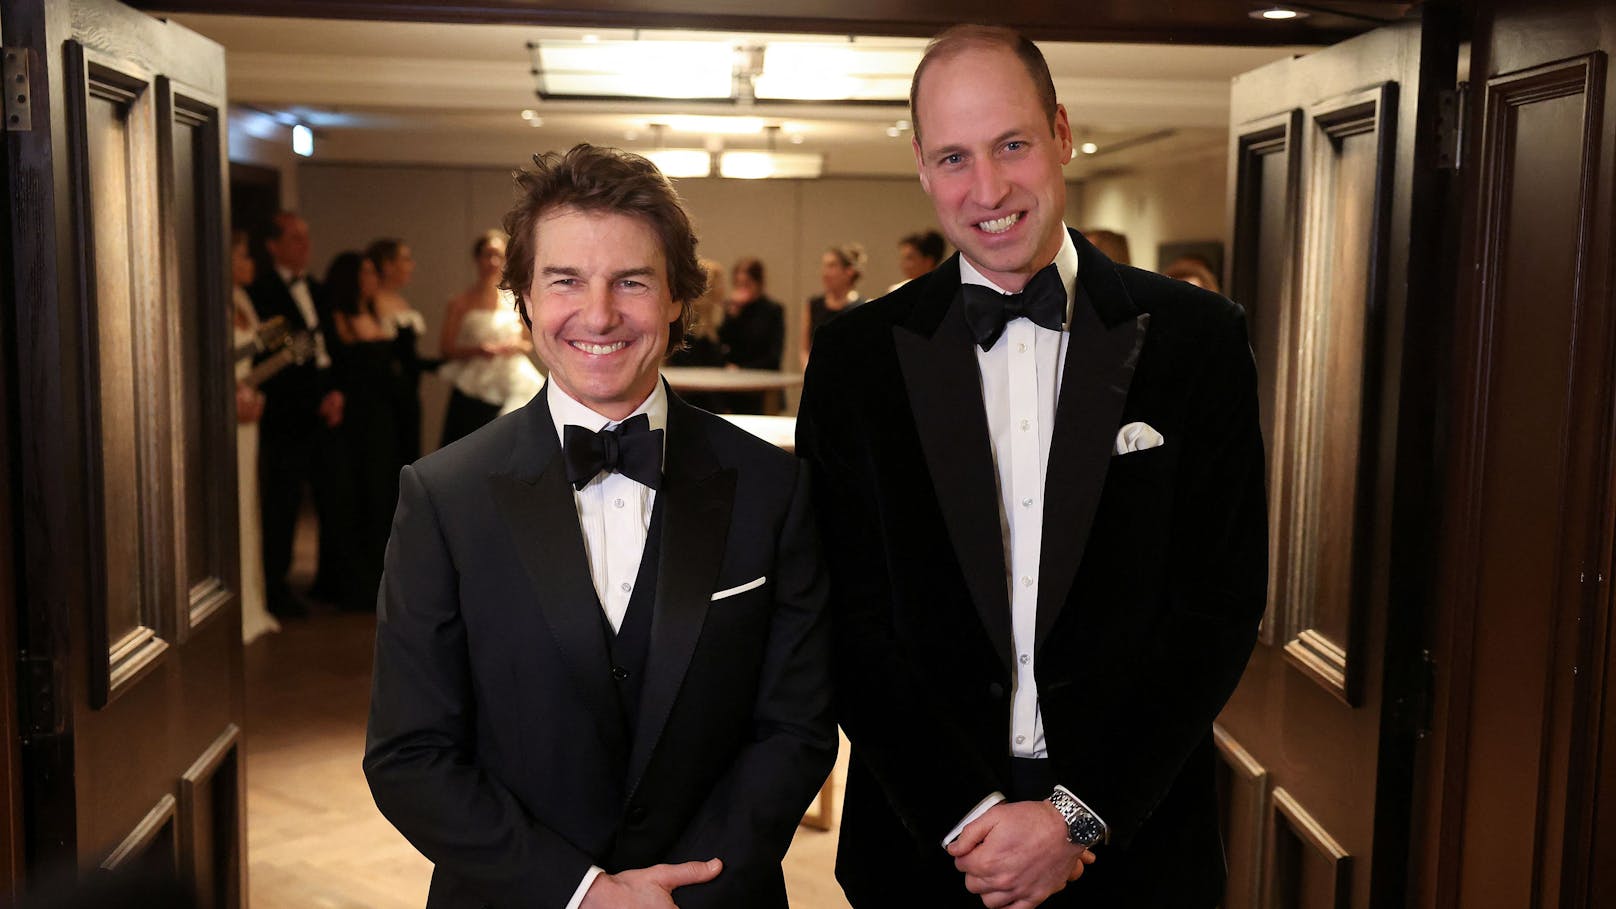 Prinz William und Tom Cruise waren zusammen auf einer Gala. Was niemandem auffiel: Auch Elsina war anwesend. Allerdings blieb sie im Hintergrund.